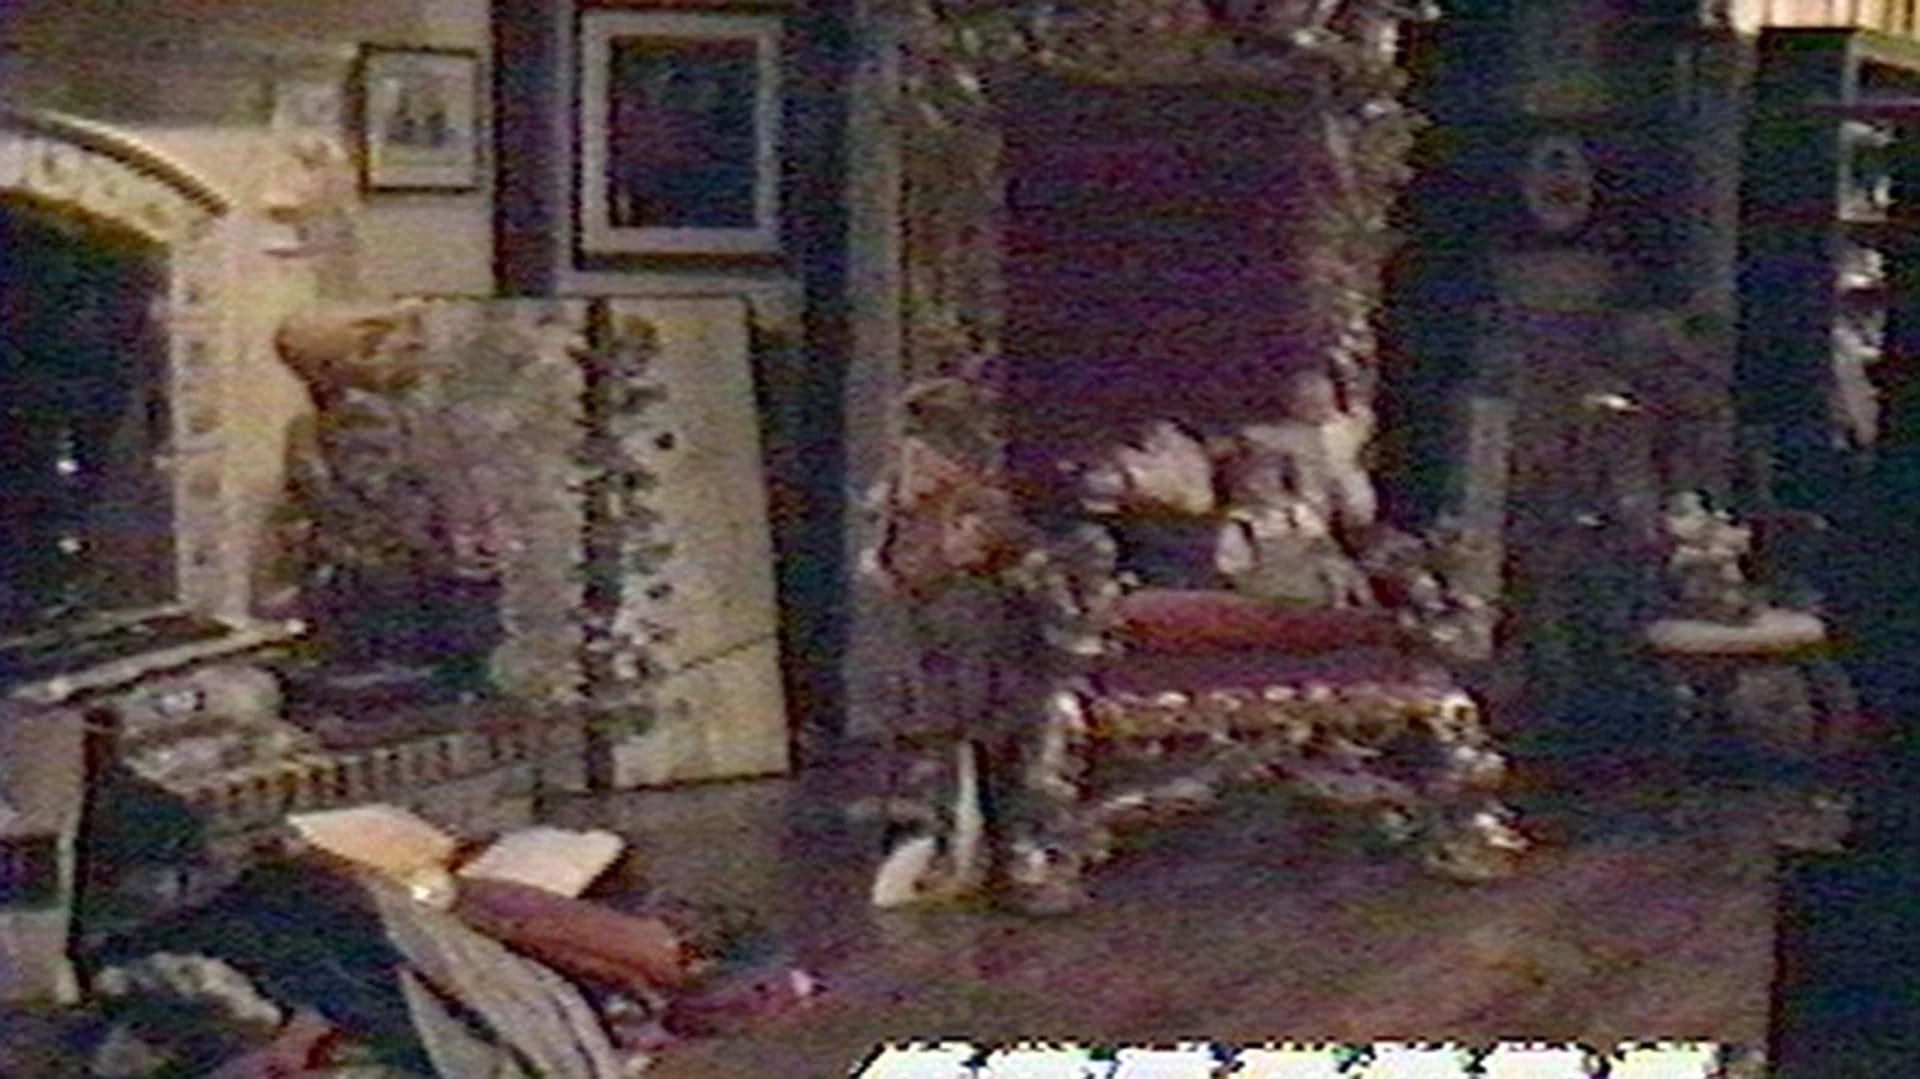 Una de las salas principales de Neverland Ranch. Allí puede verse el trono que usaba el dueño de casa rodeado de pequeños